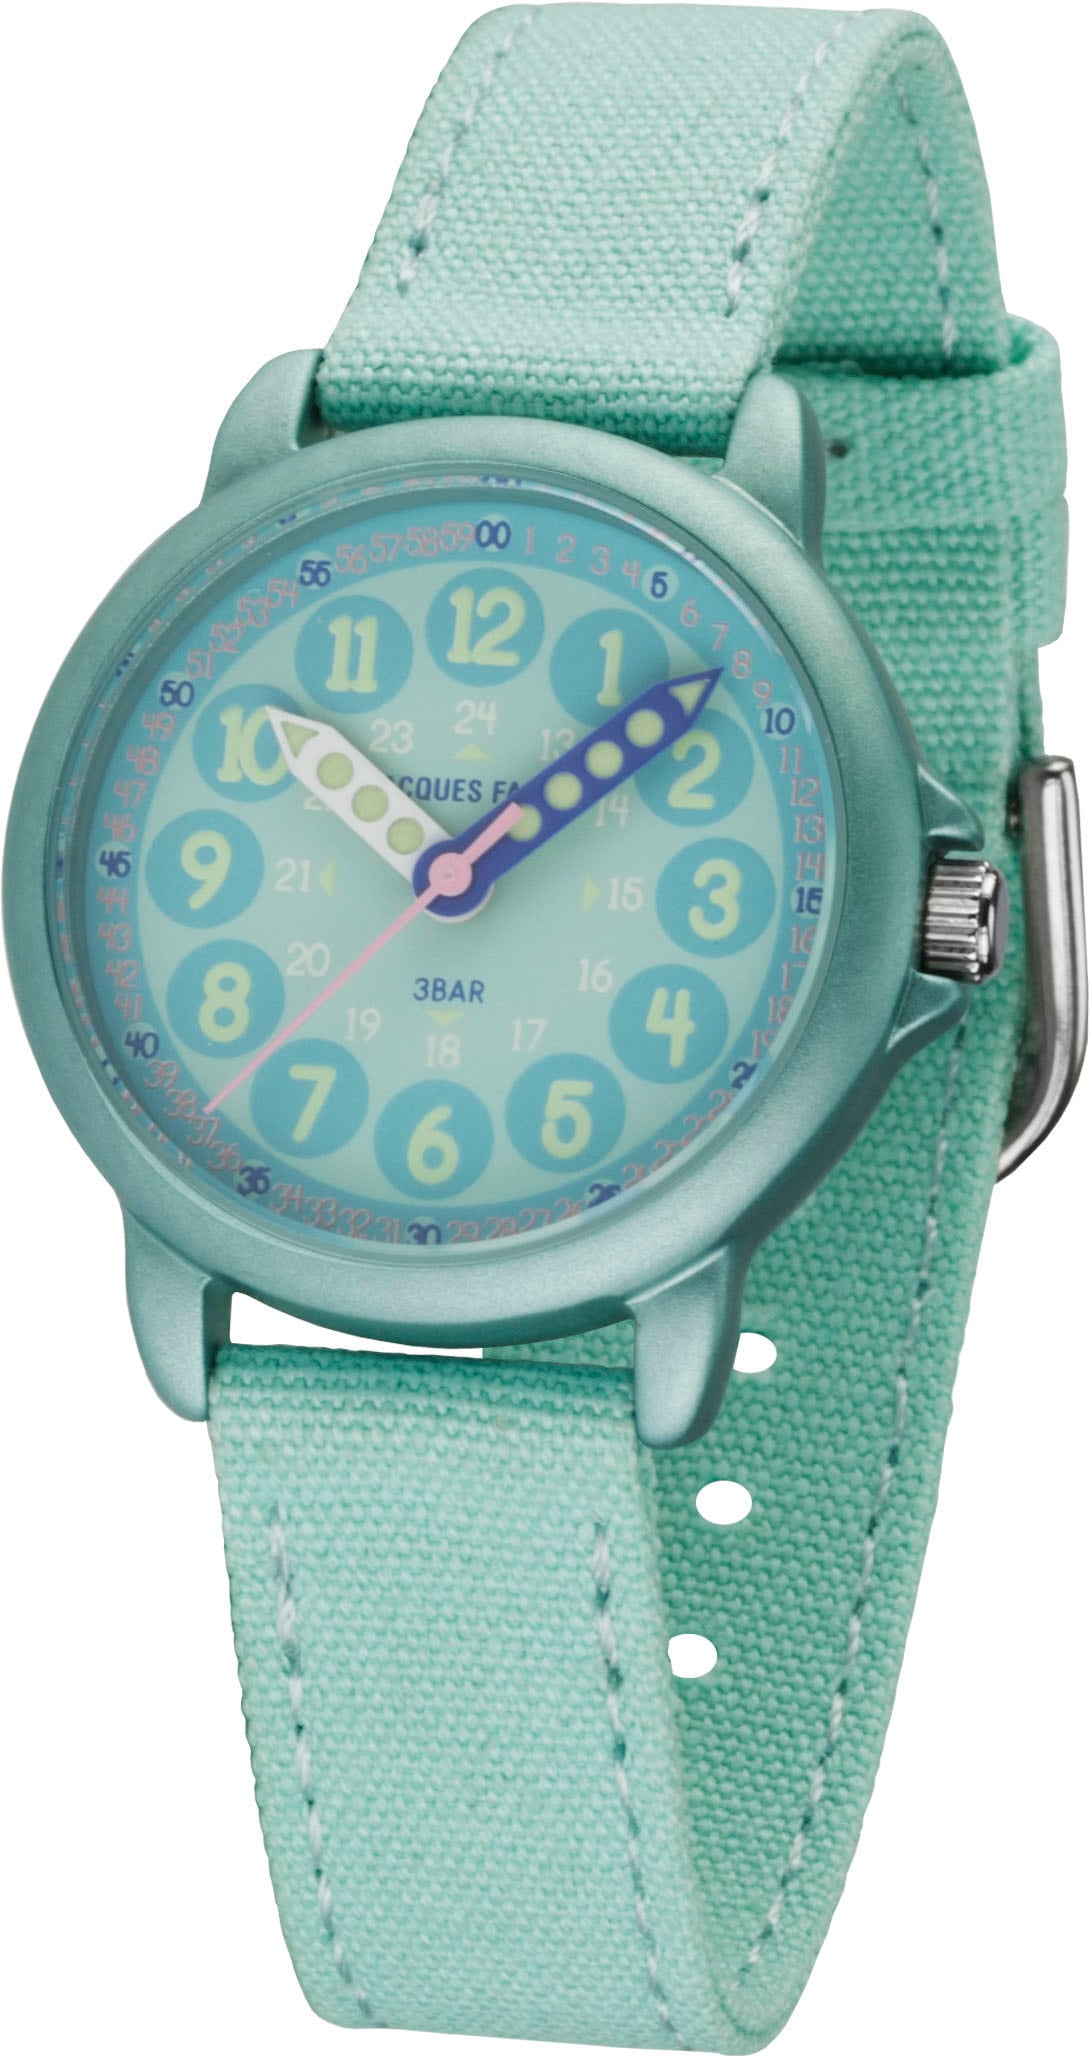 Quarzuhr »ORGT 1113«, Armbanduhr, Kinderuhr, Mädchenuhr, ideal auch als Geschenk